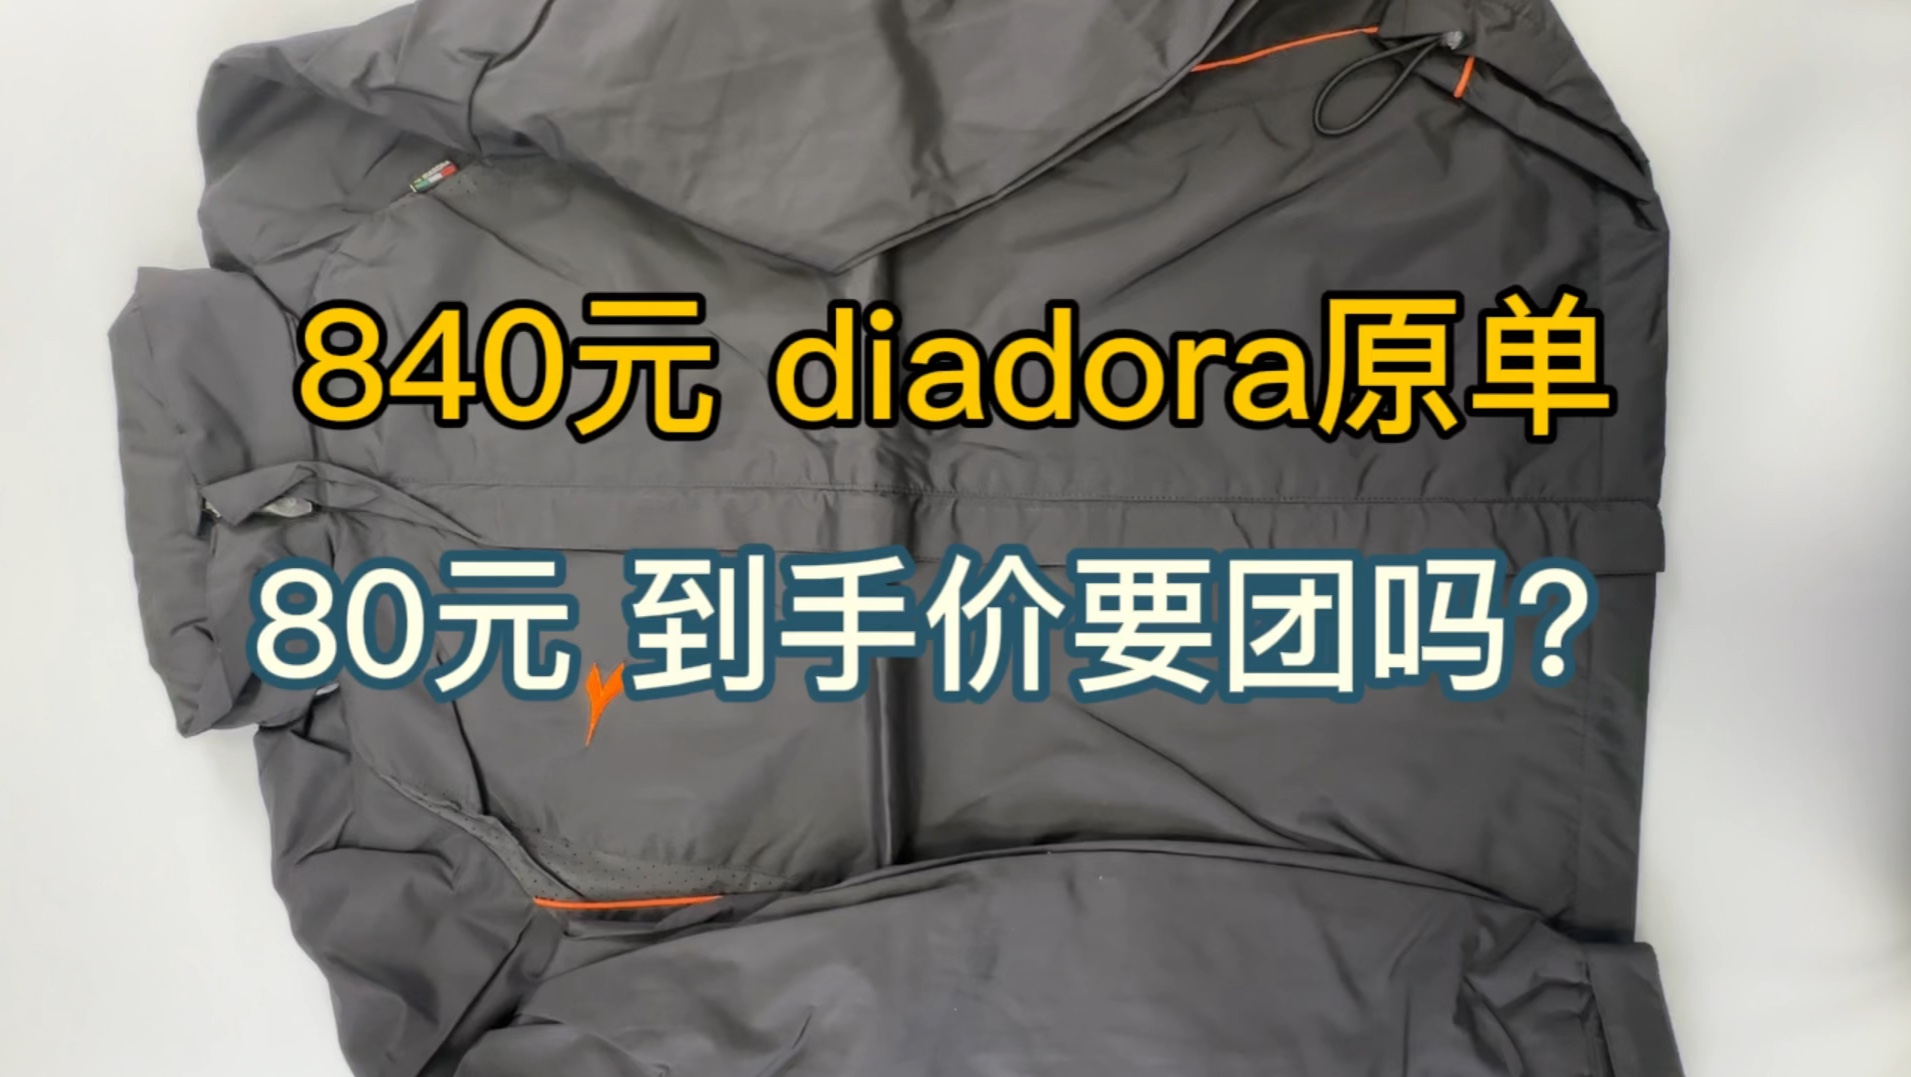 840元 diadora原单运动外套 80元到手价团吗？